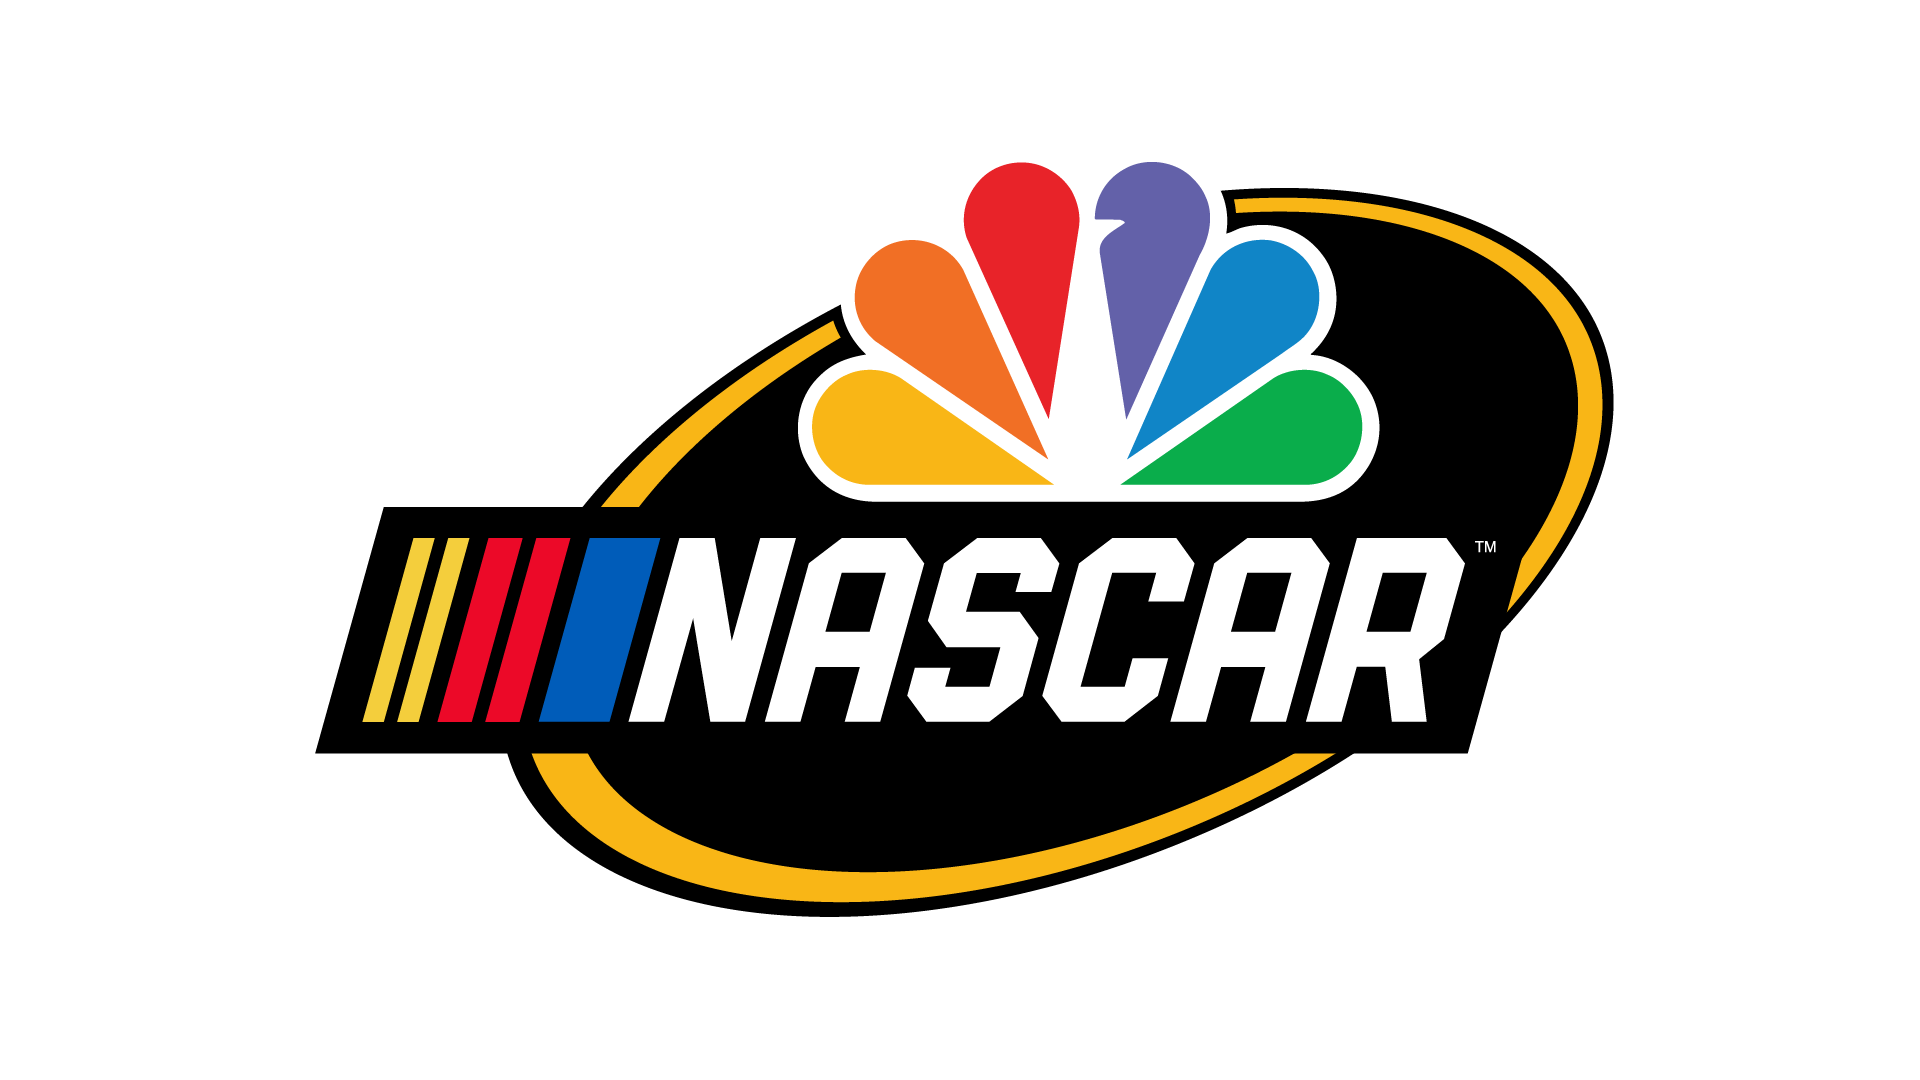 NASCAR PNG IMAGE